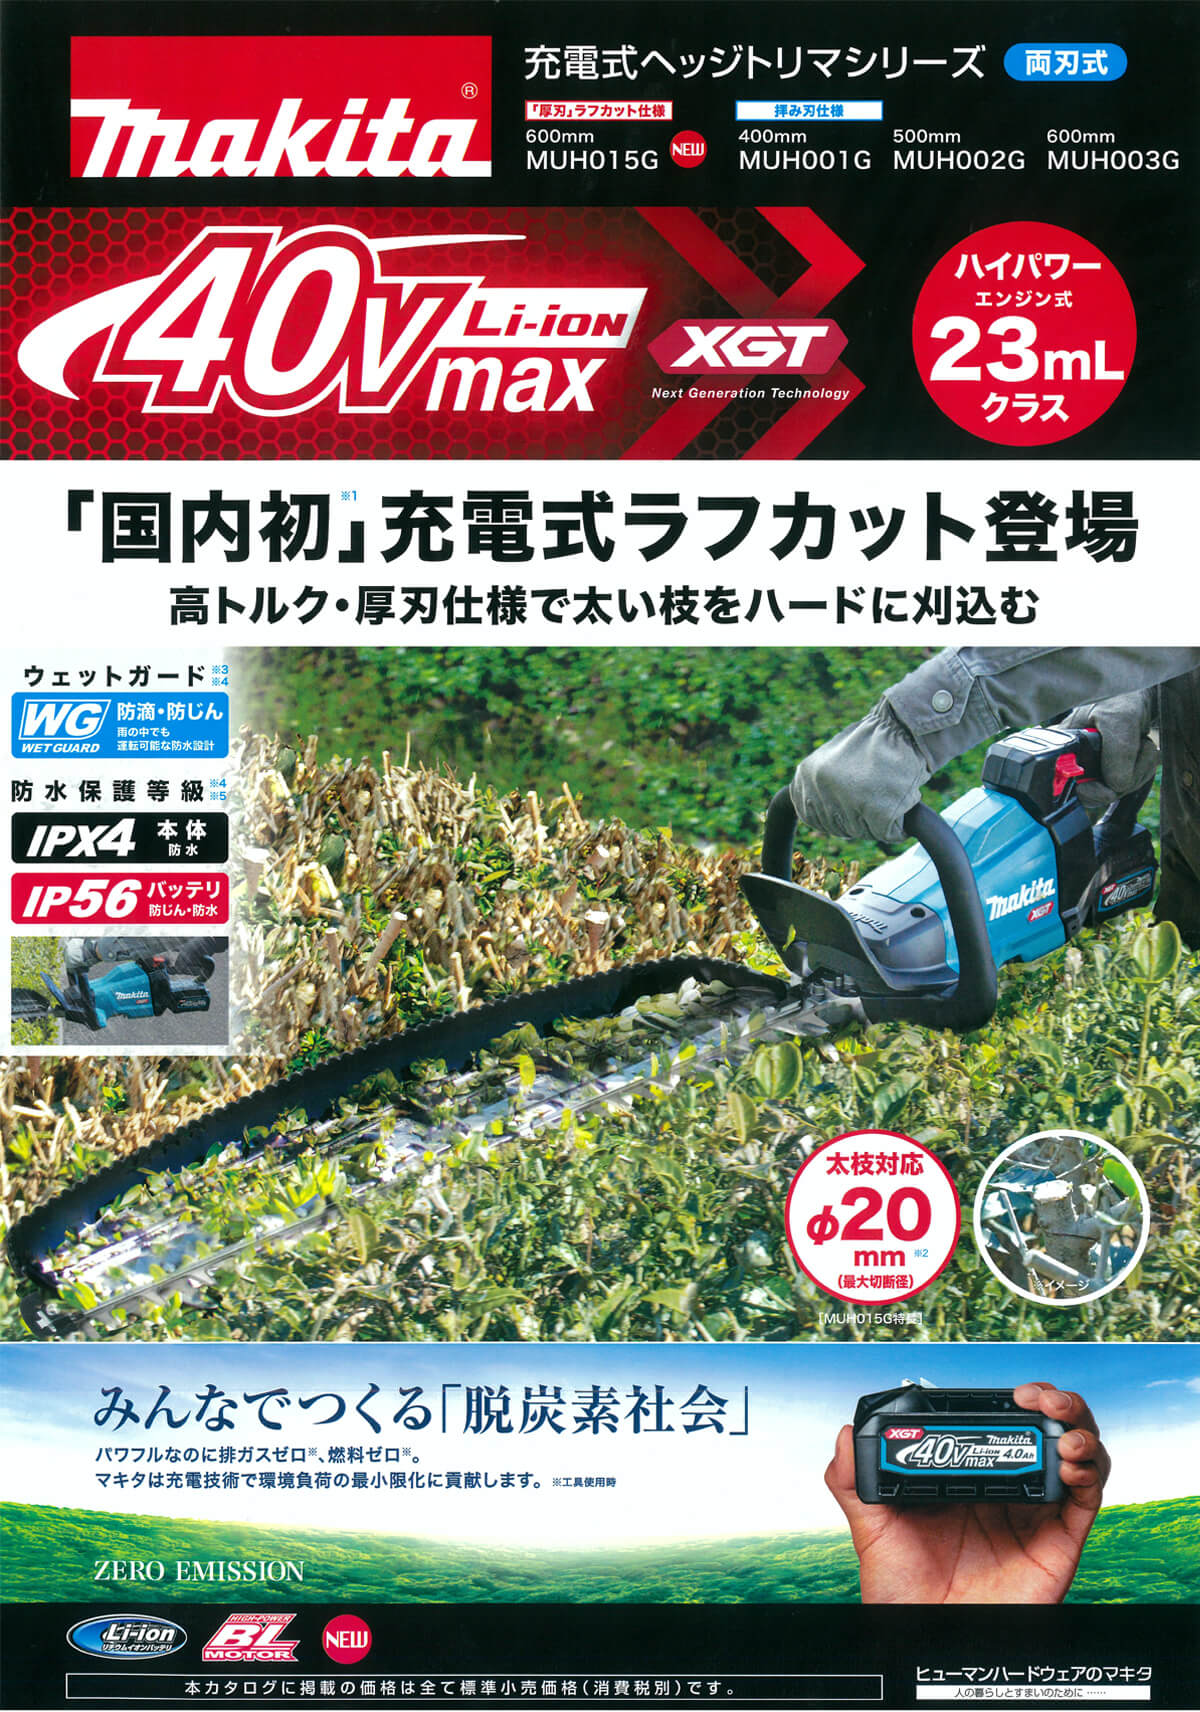 マキタ MUH015GRDX 40Vmax充電式ヘッジトリマ 600mm ウエダ金物【公式